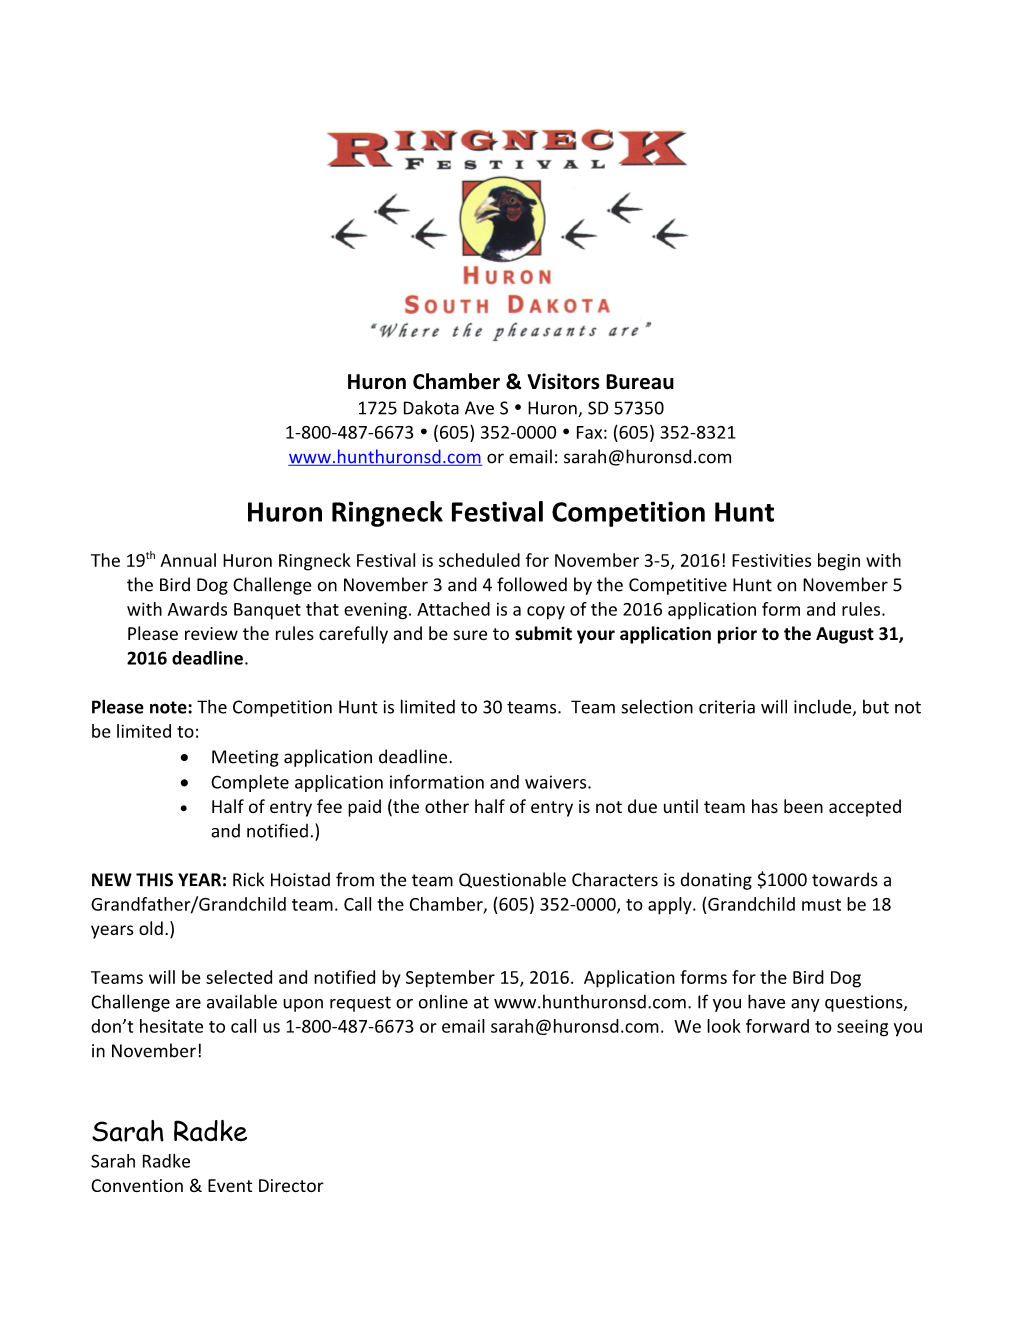 Rules for Ringneck Festival Hunt